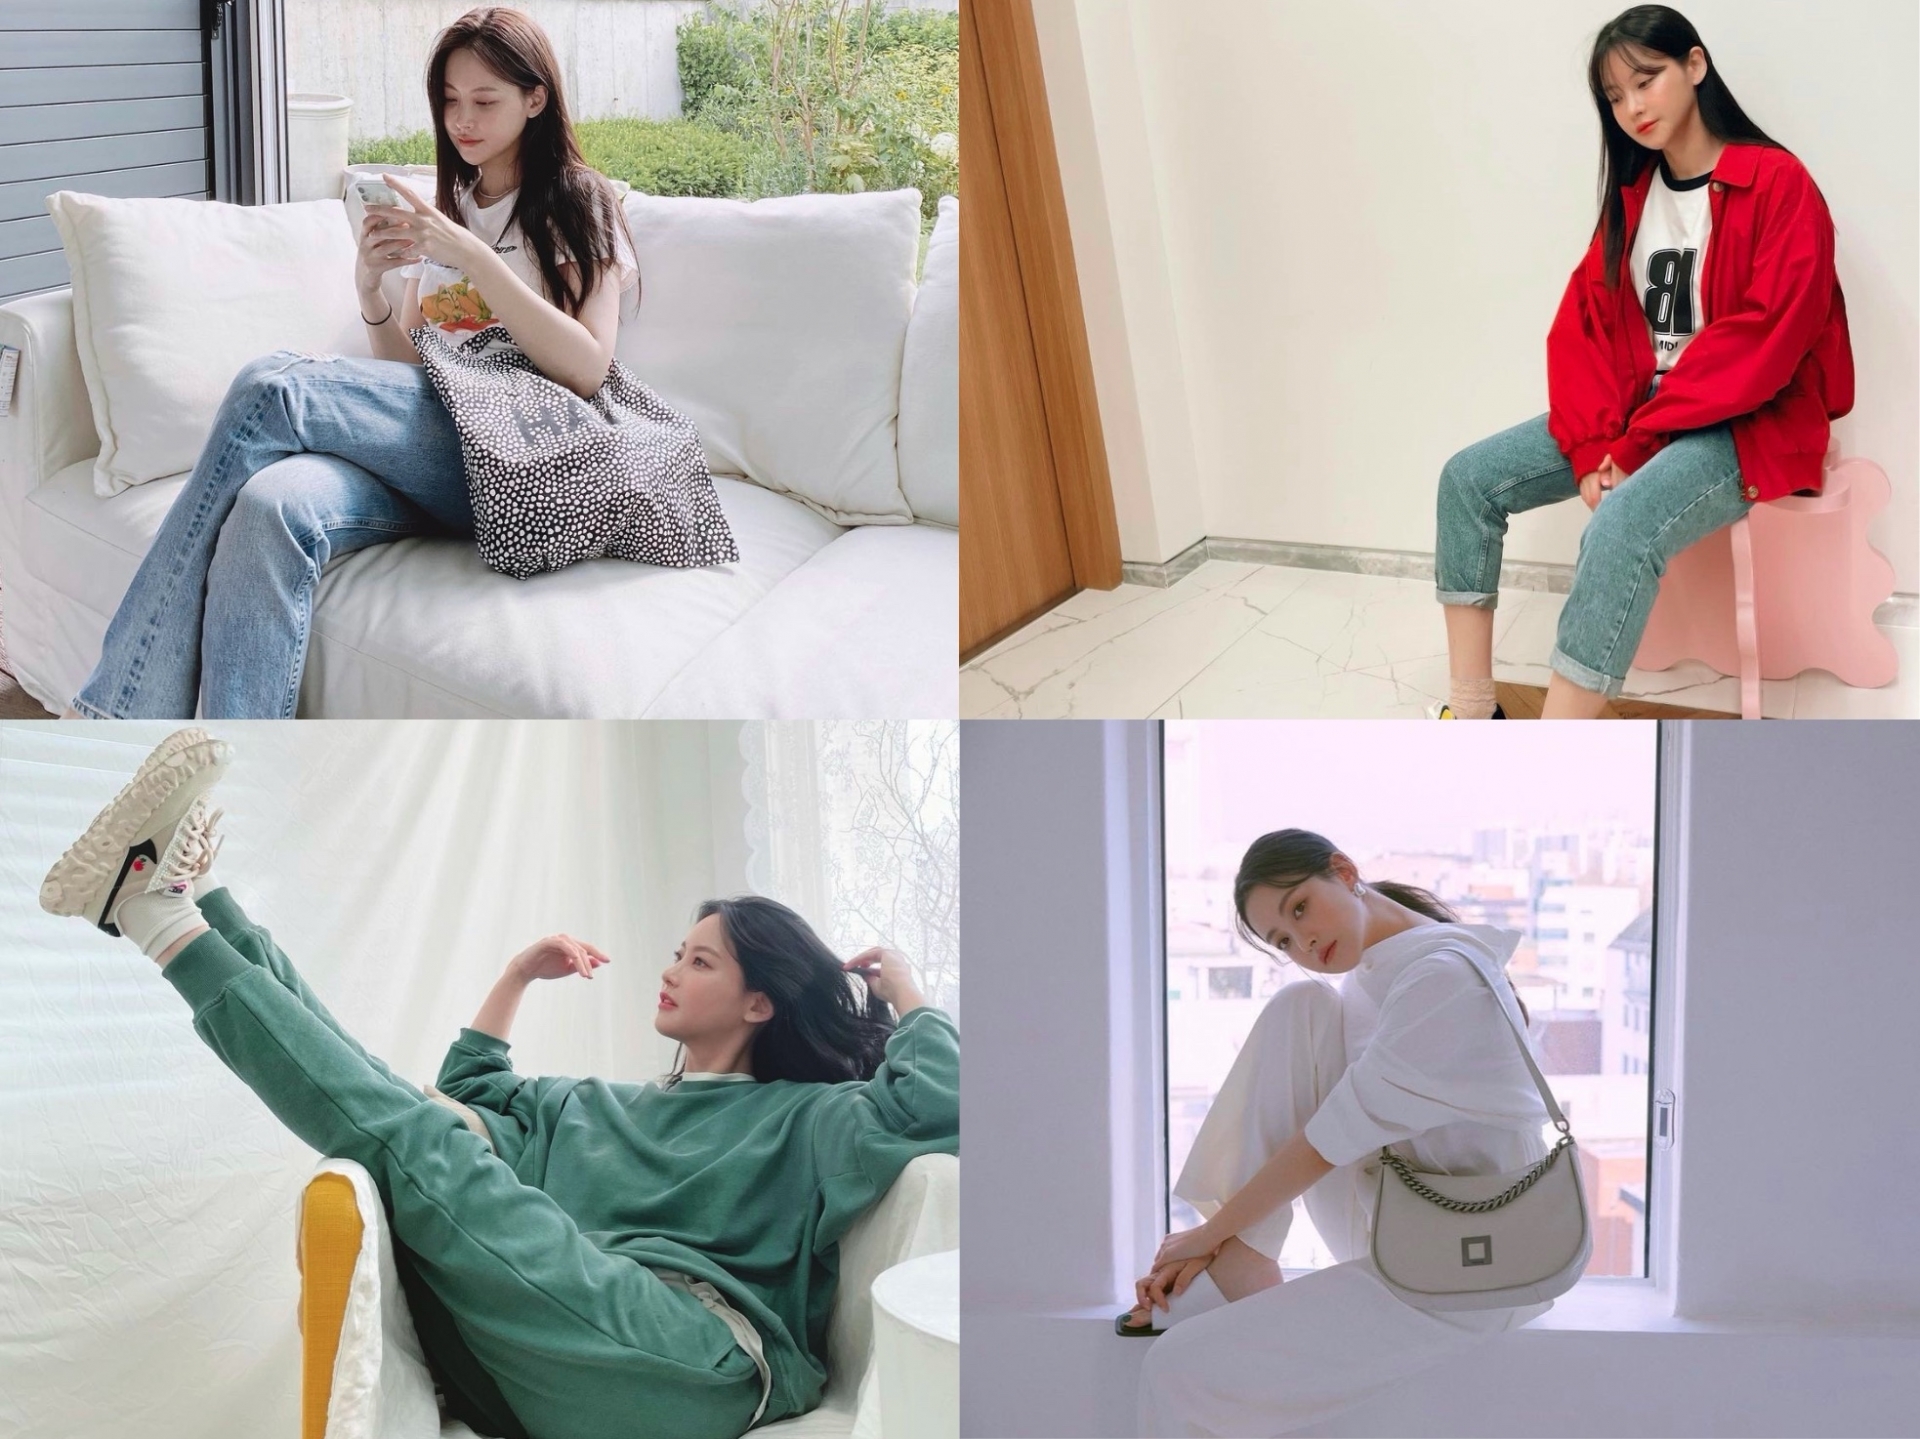 Mỹ nhân Oh Yeon Seo thường chọn quần jeans là item thời trang yêu thích của mình. Cô nàng cũng thường xuyên diện trang phục có gam màu tươi sáng cùng phong cách thời trang đơn giản nhưng vẫn rất chất lượng. Nhìn qua chẳng ai nghĩ cô nàng đã bước qua độ tuổi 34.